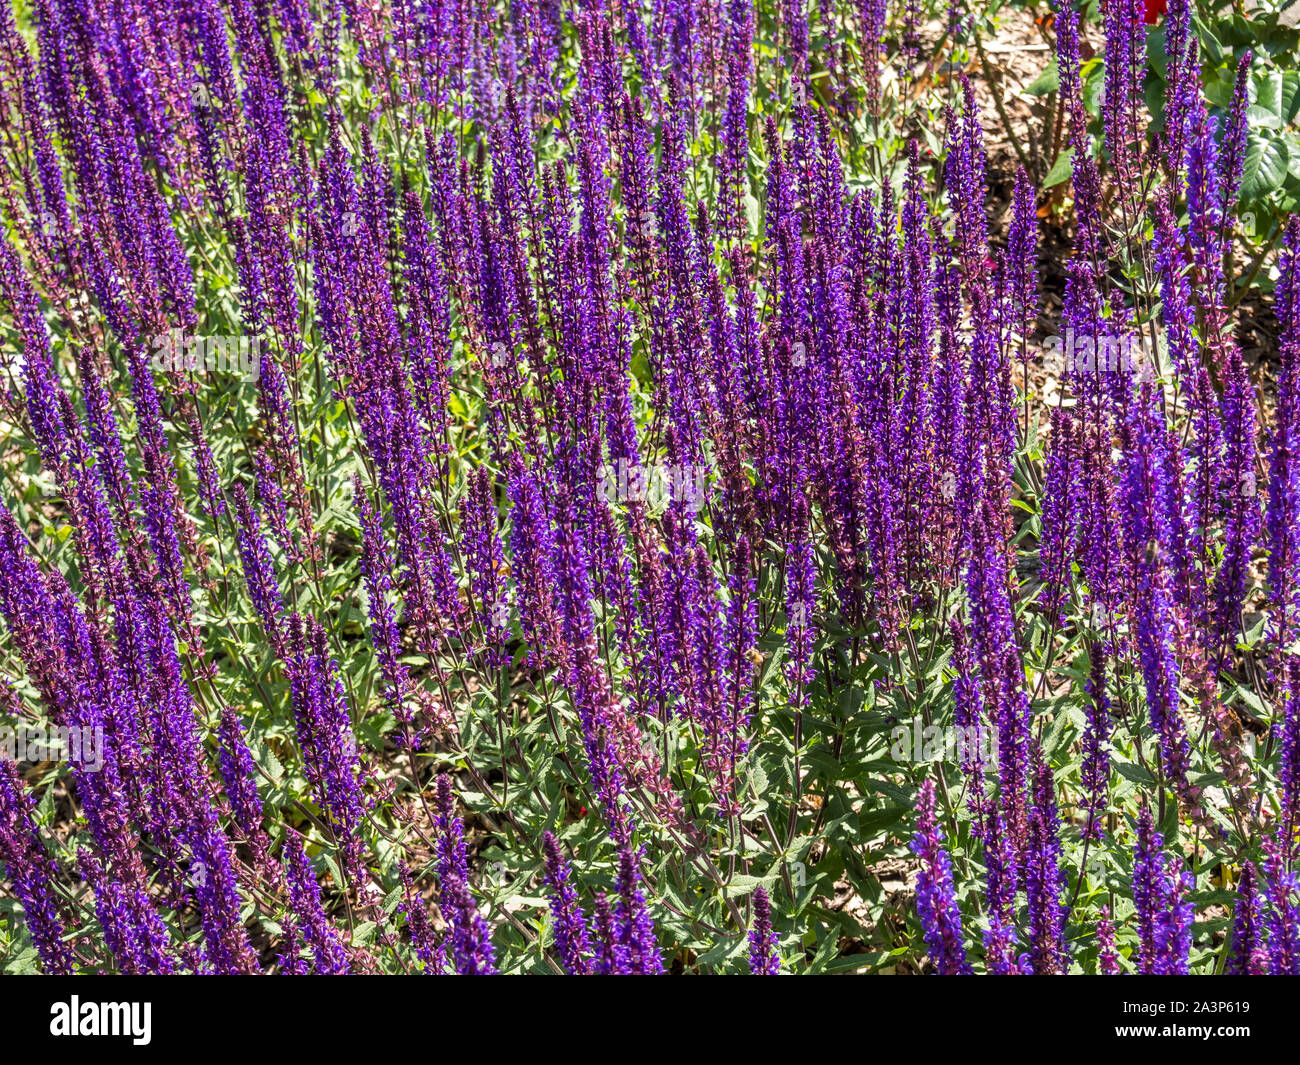 Lavendel Filed in the Garden Stock Photo